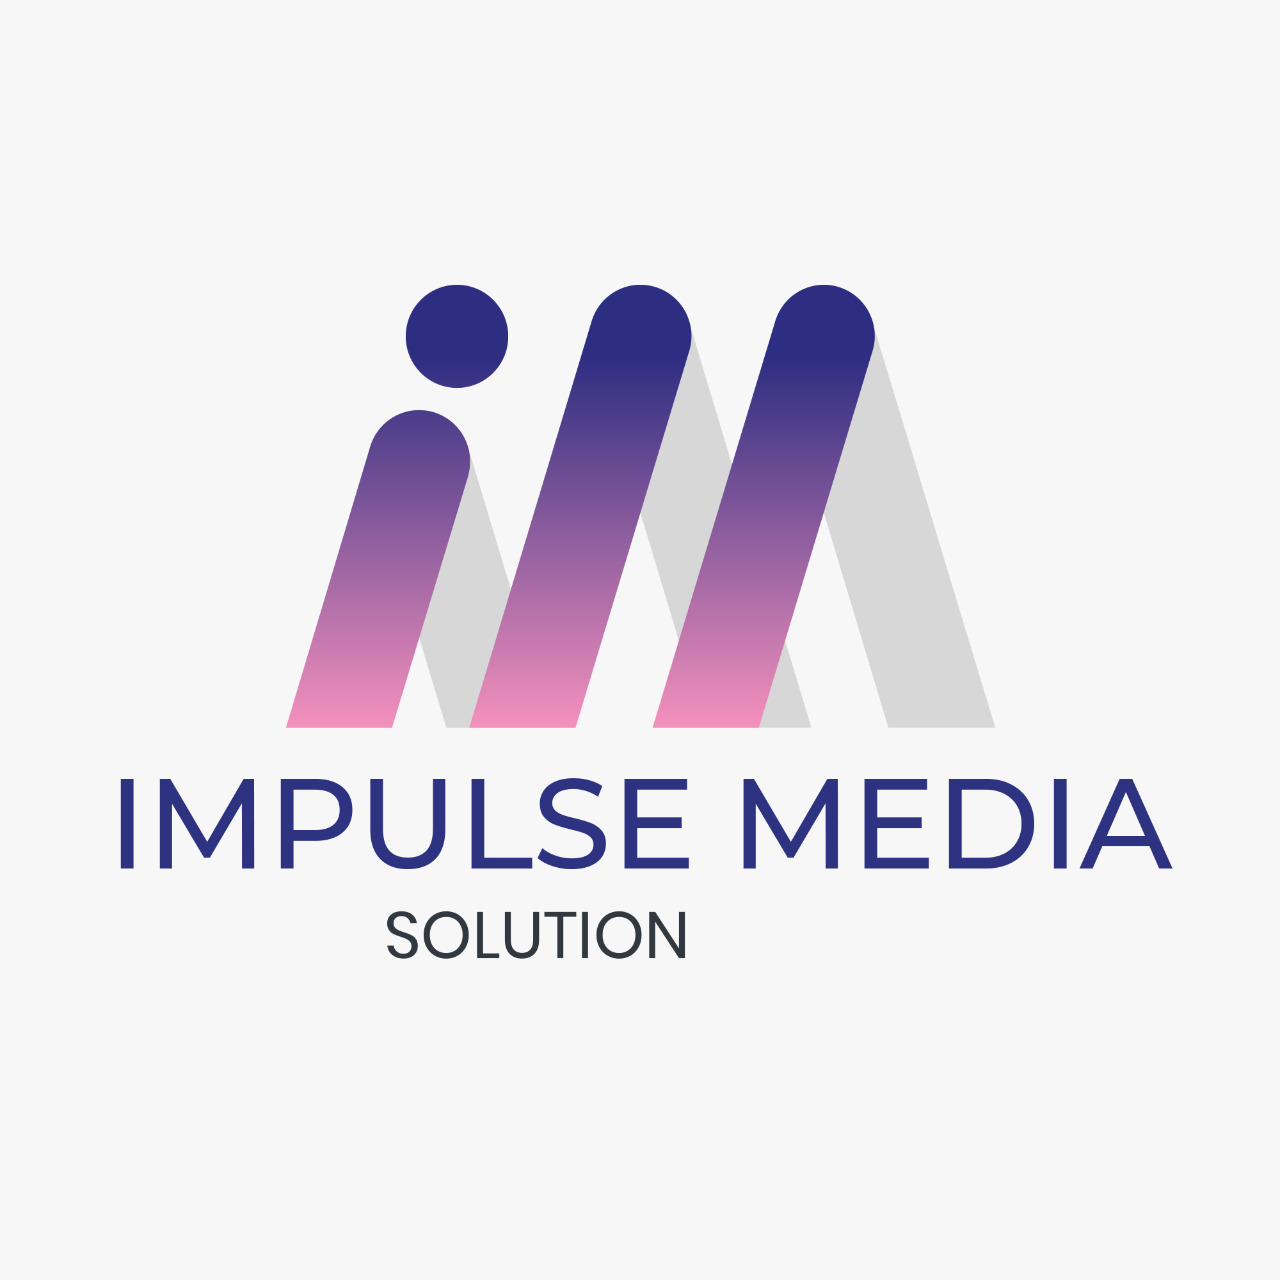 Impulse Media Solution